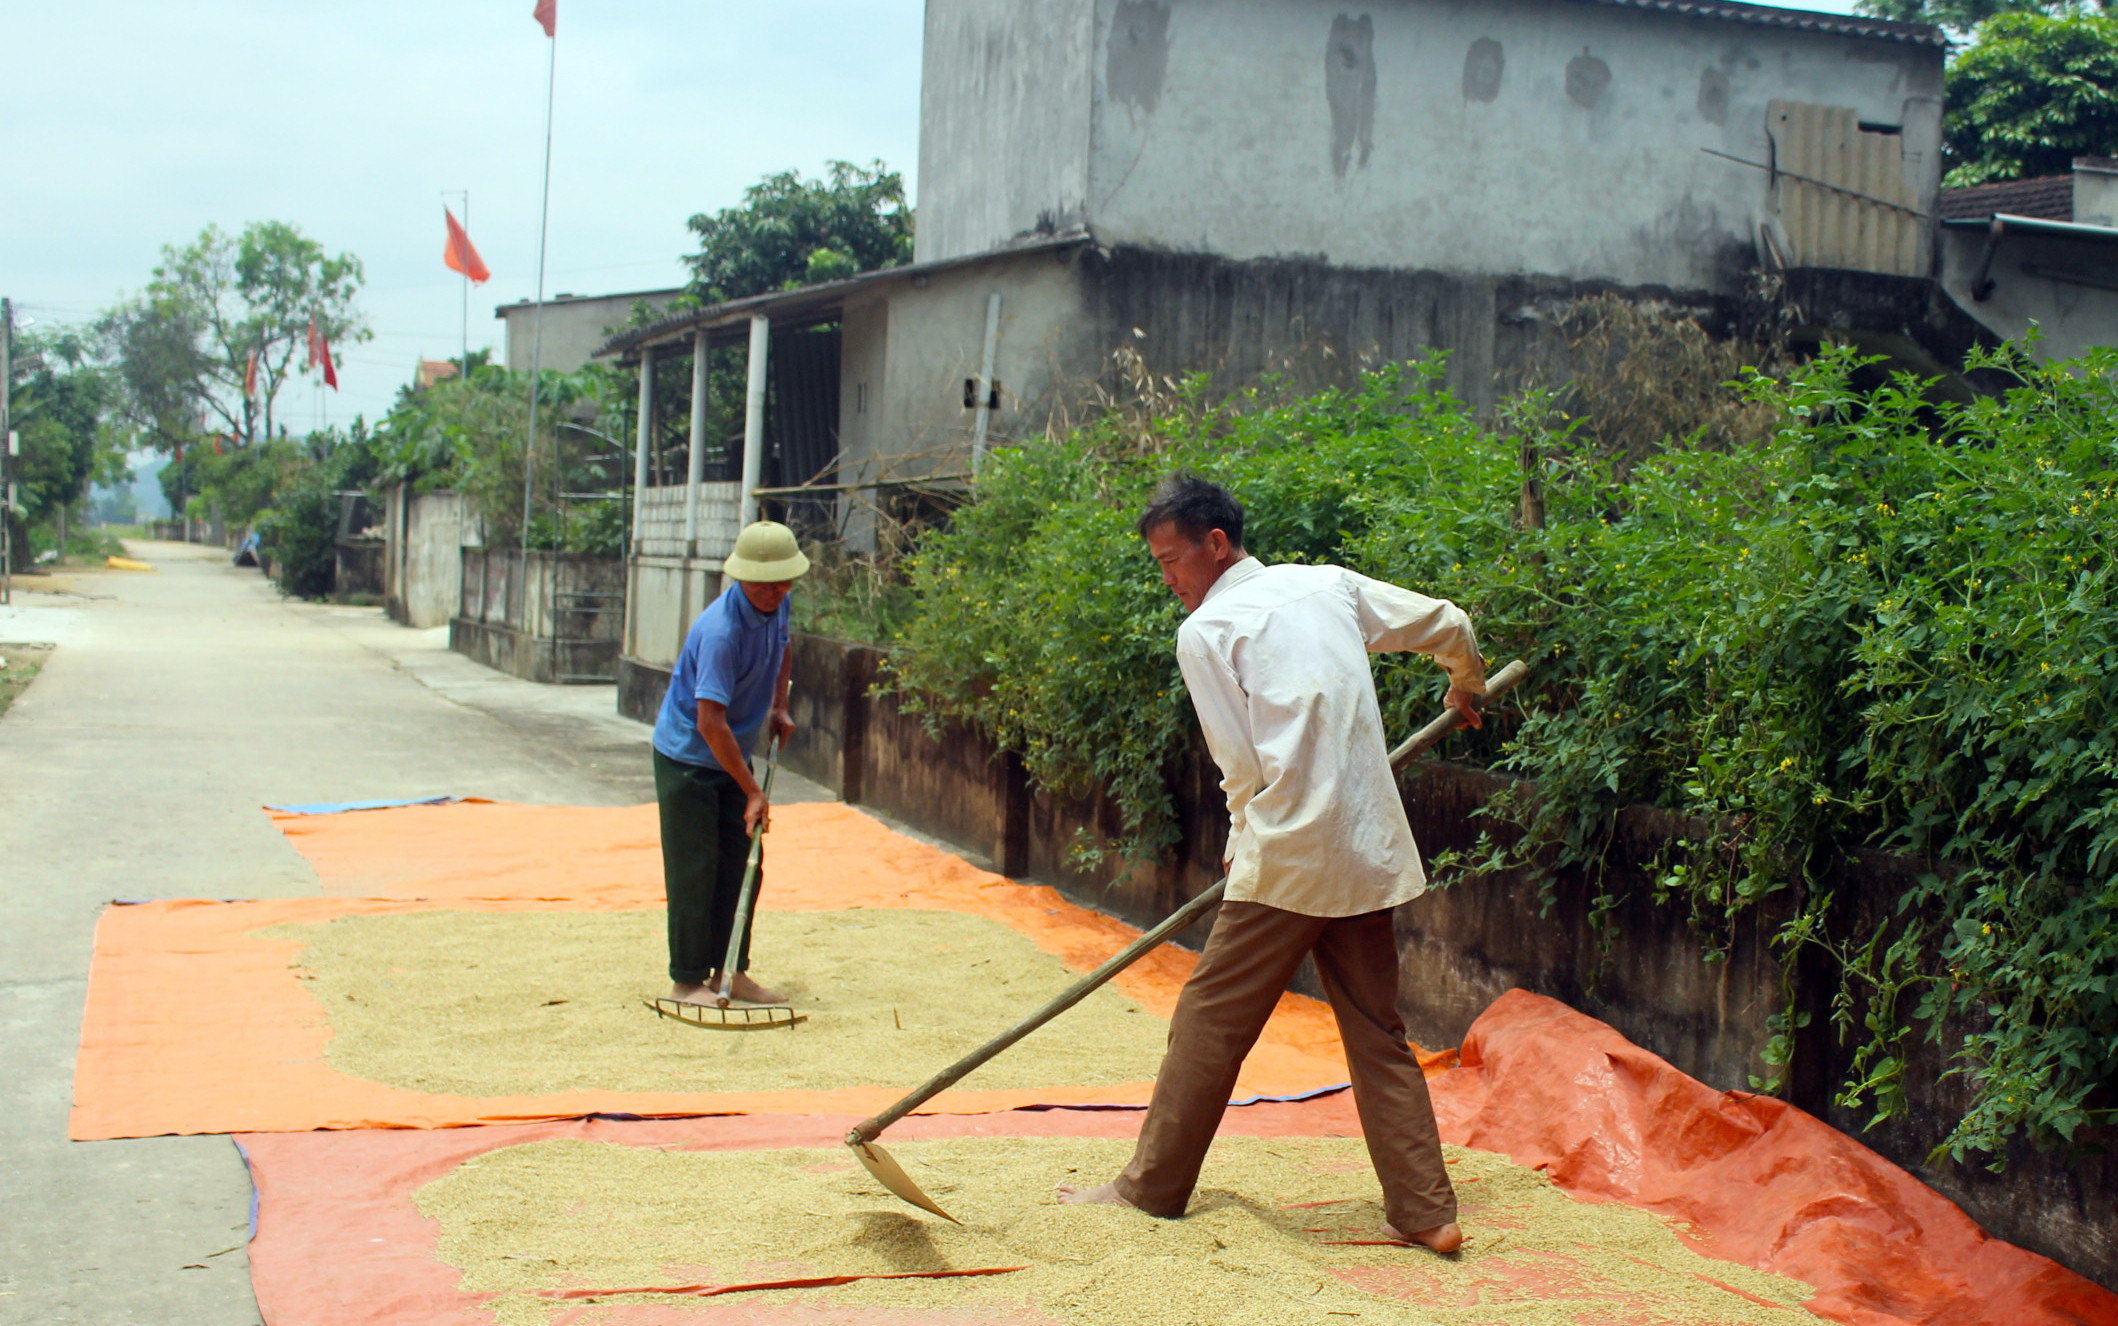 Lúa đã được thu hoạch tại xóm ngaòi đê xã Châu Nhân, huyện Hưng Nguyên. Ảnh: Phú Hương